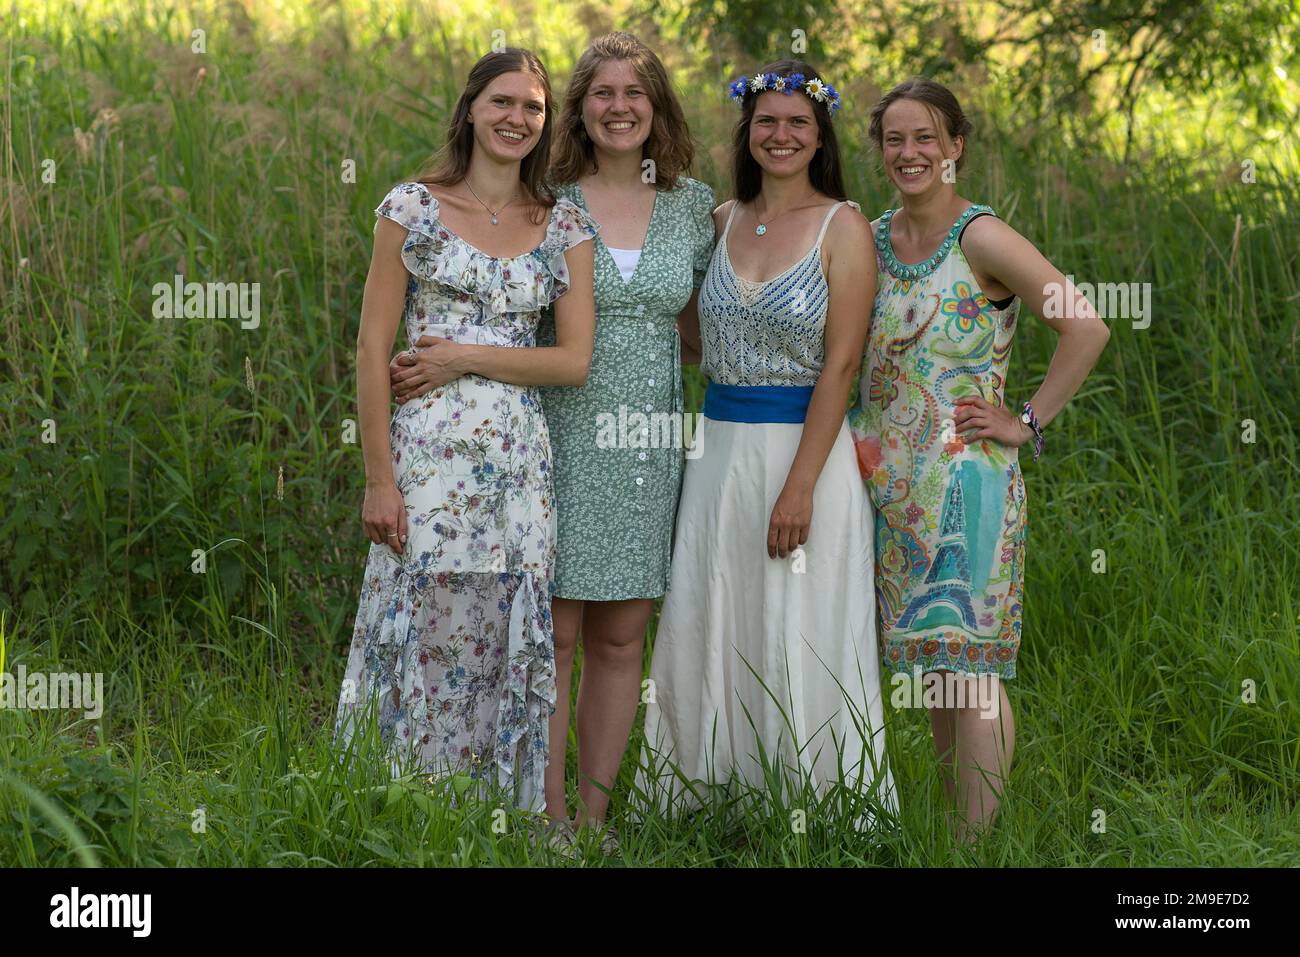 Quatre jeunes femmes riant dans des robes de fête, Mecklembourg-Poméranie occidentale, Allemagne Banque D'Images